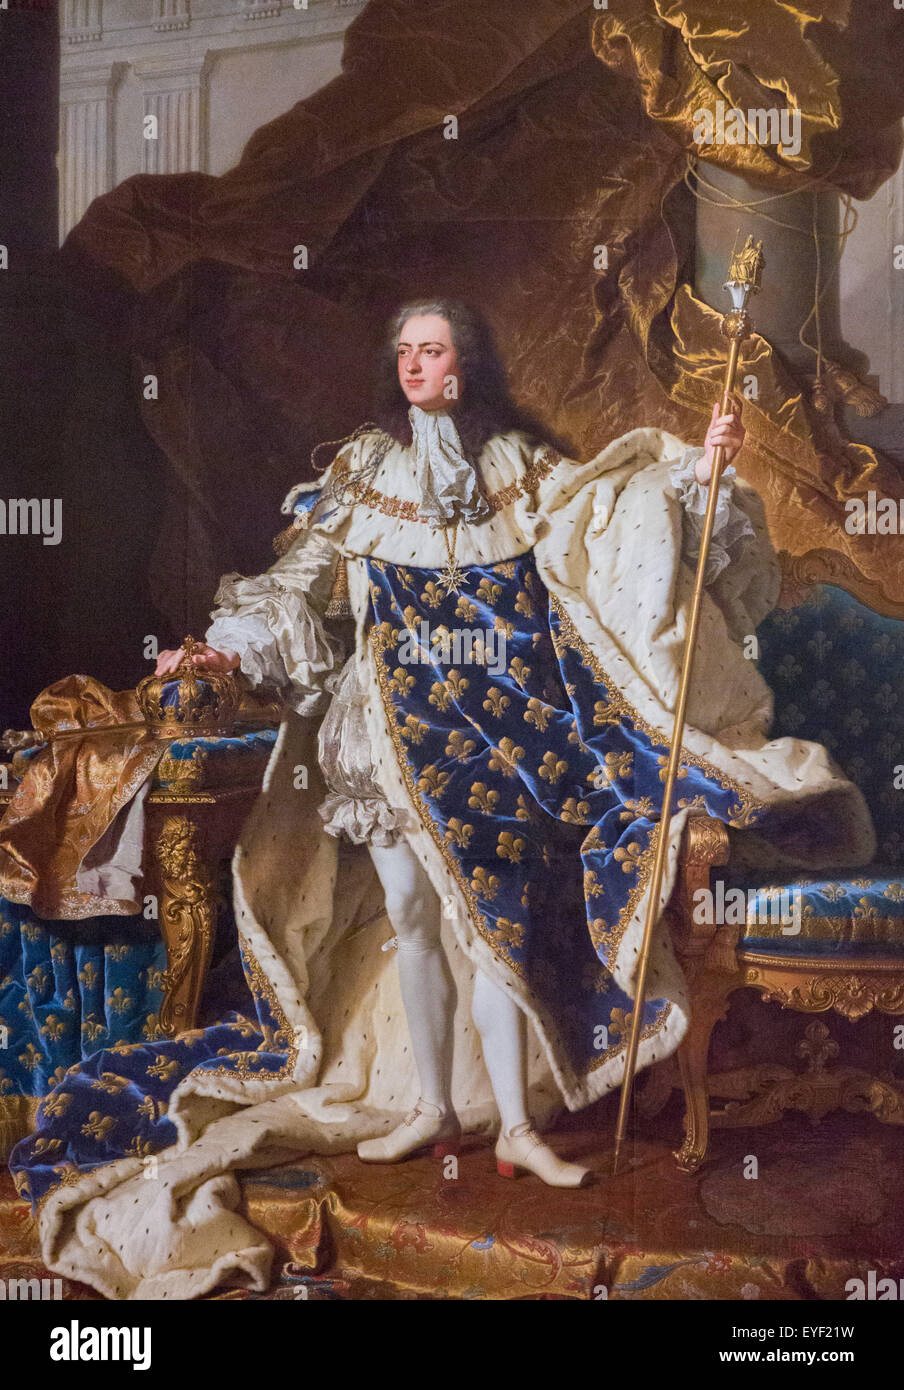 Luis XV (1710-1774), rey de Francia 10/12/2013 - Colección del siglo XVIII. Foto de stock